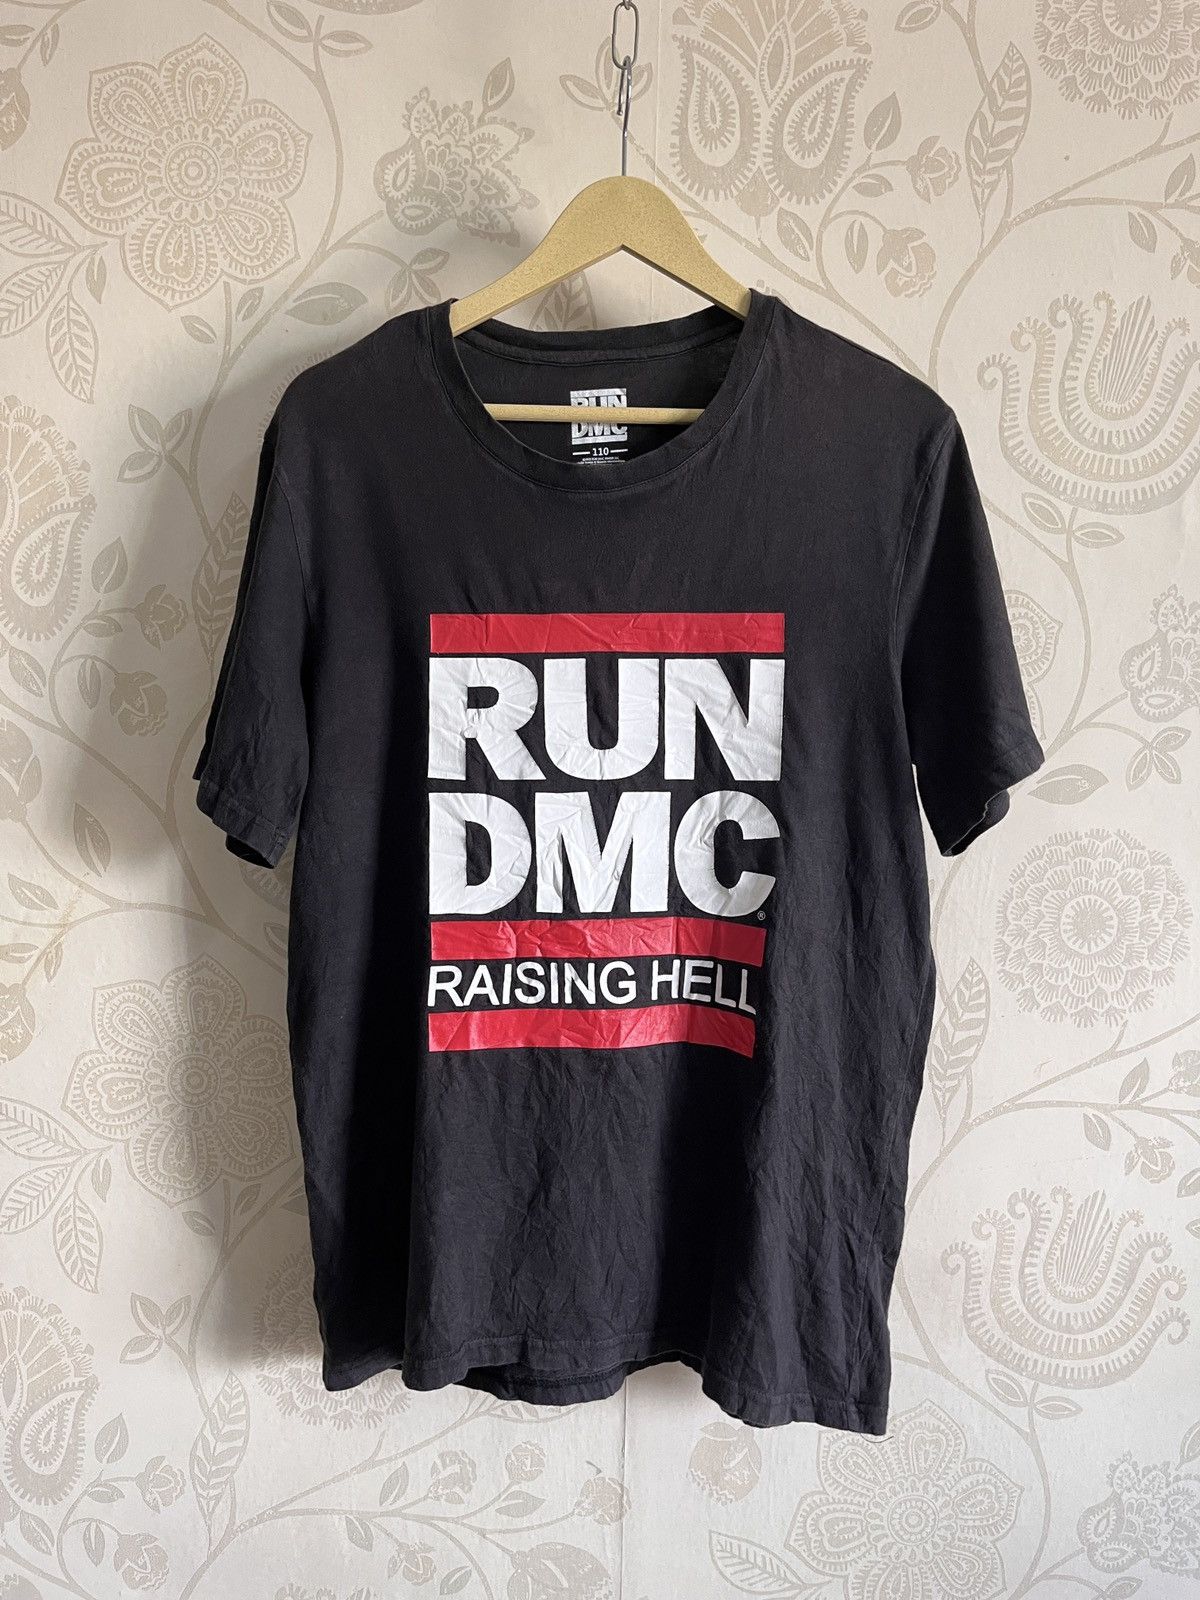 RUN DMC Raising Hell Rap Tees Black Copyright 2015 - 13